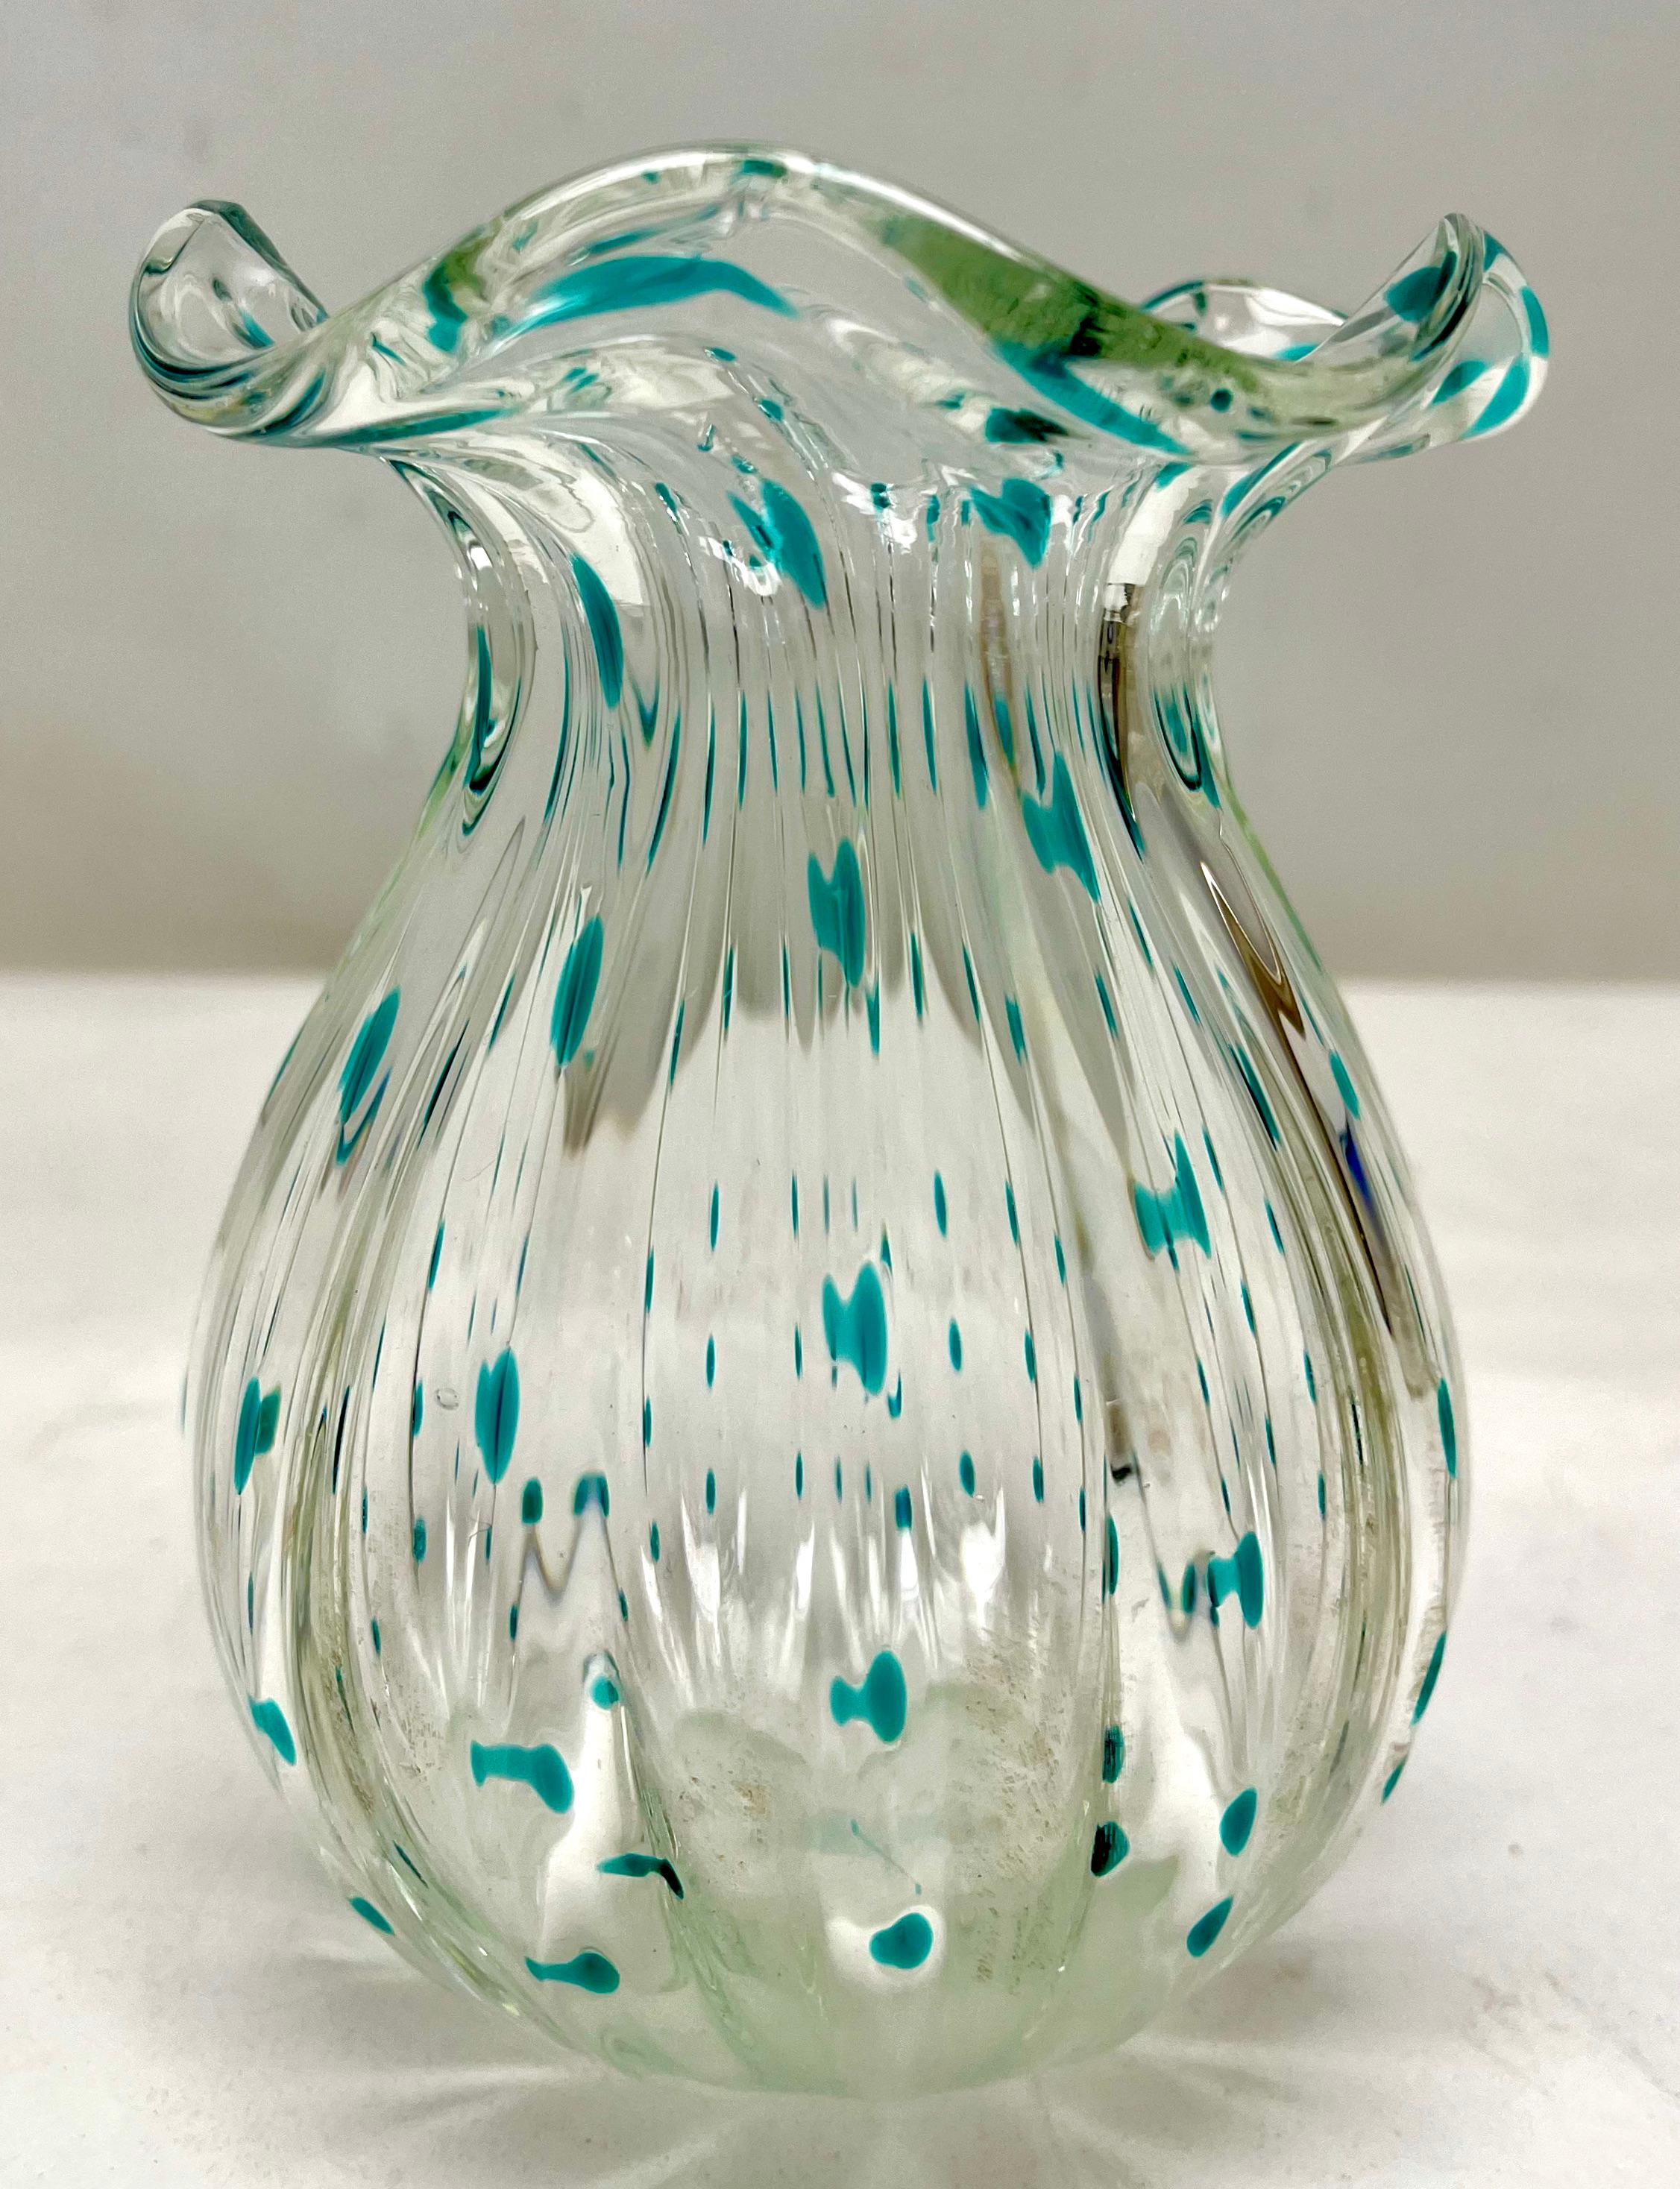 Loetz Jugendstil Vase mit Details aus Colered Dots Glas 1930er Jahre
Wunderschön dekoriertes Glas
Selten zu finden mit Originalzustand 

Das Stück ist in gutem Zustand und eine echte Schönheit!
Die Fotografie schafft es nicht, die einfache Eleganz